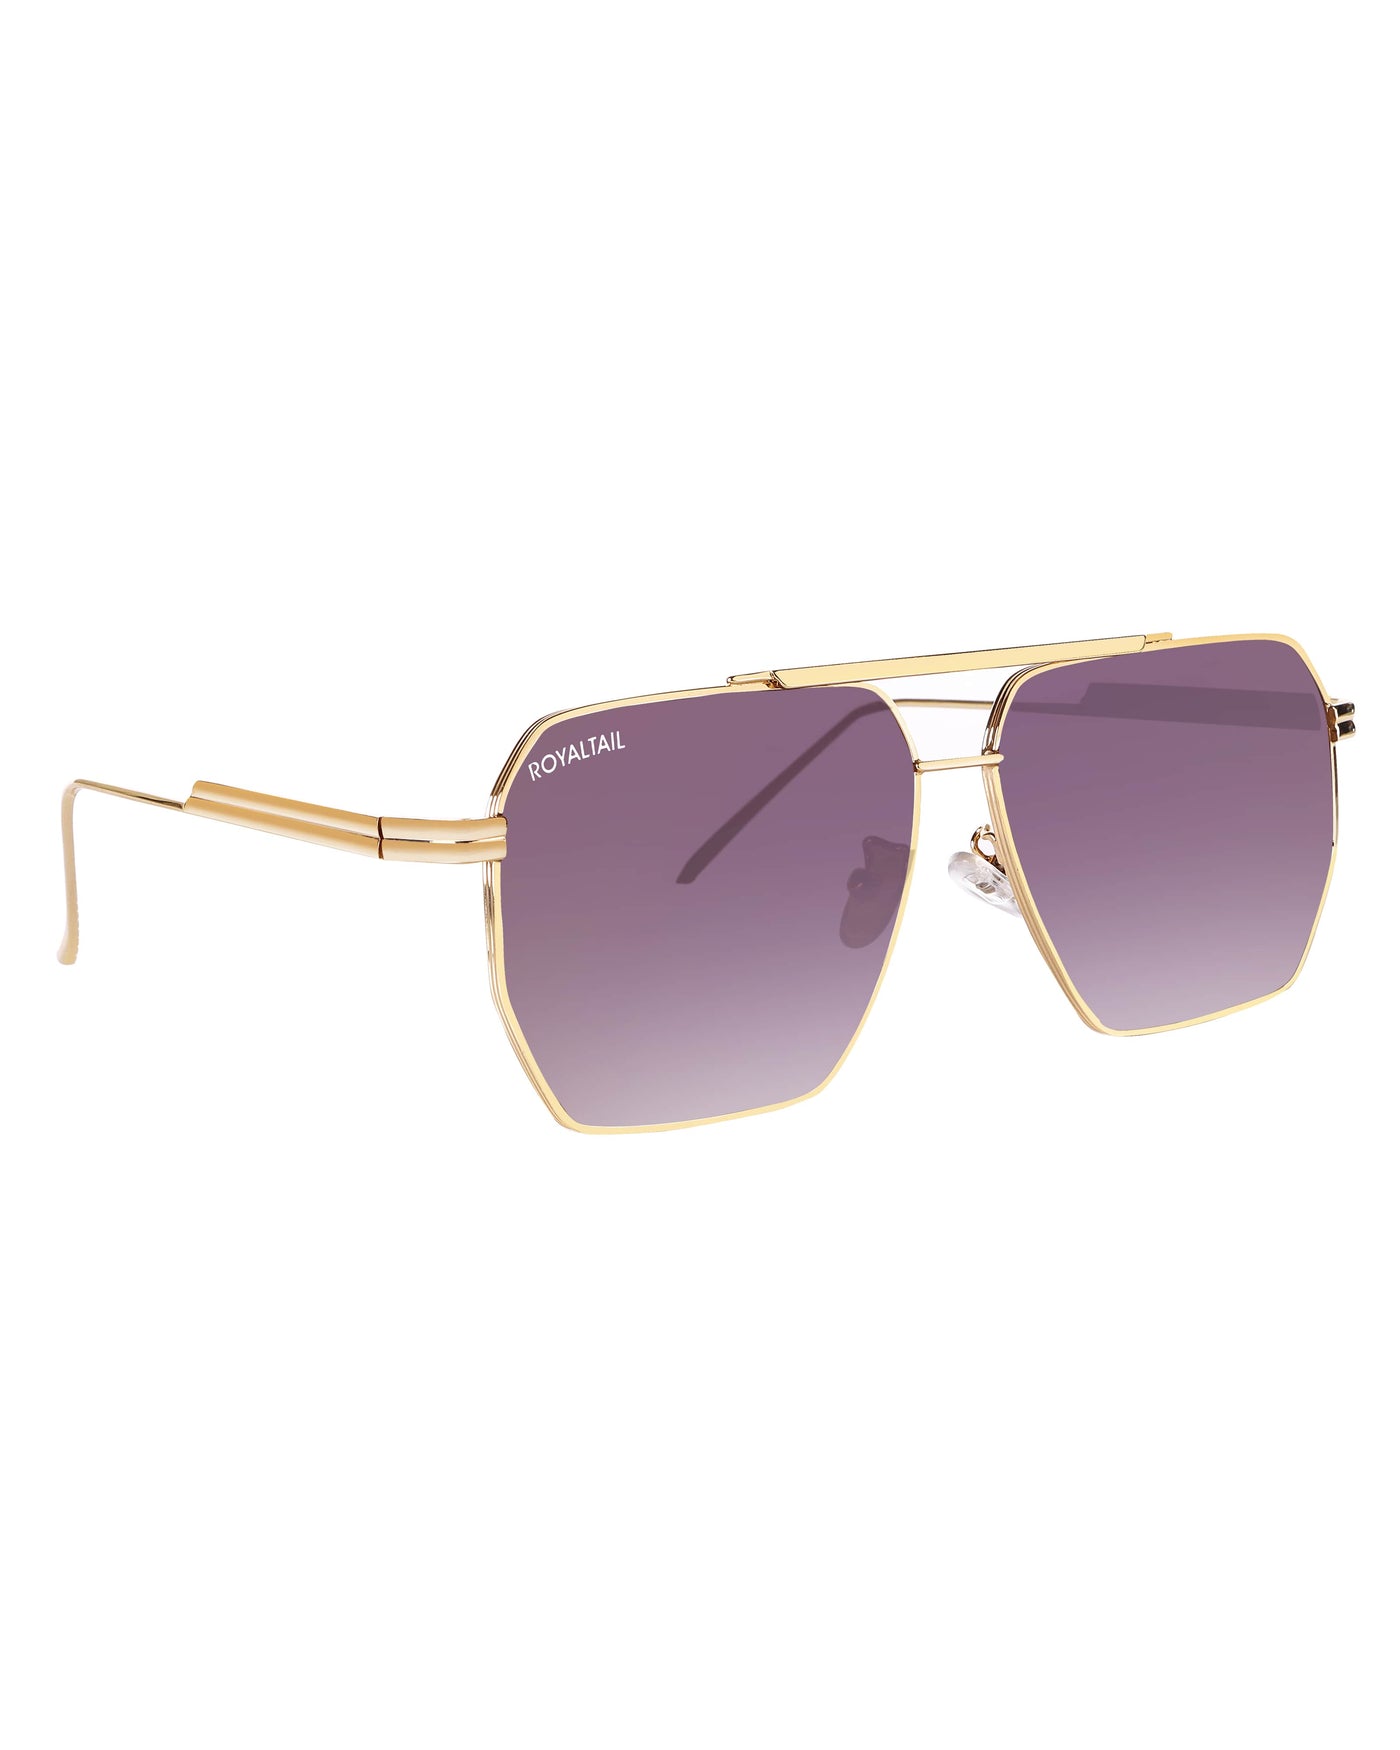 Bottaga Purple UV Protected Metal Sunglasses RT058